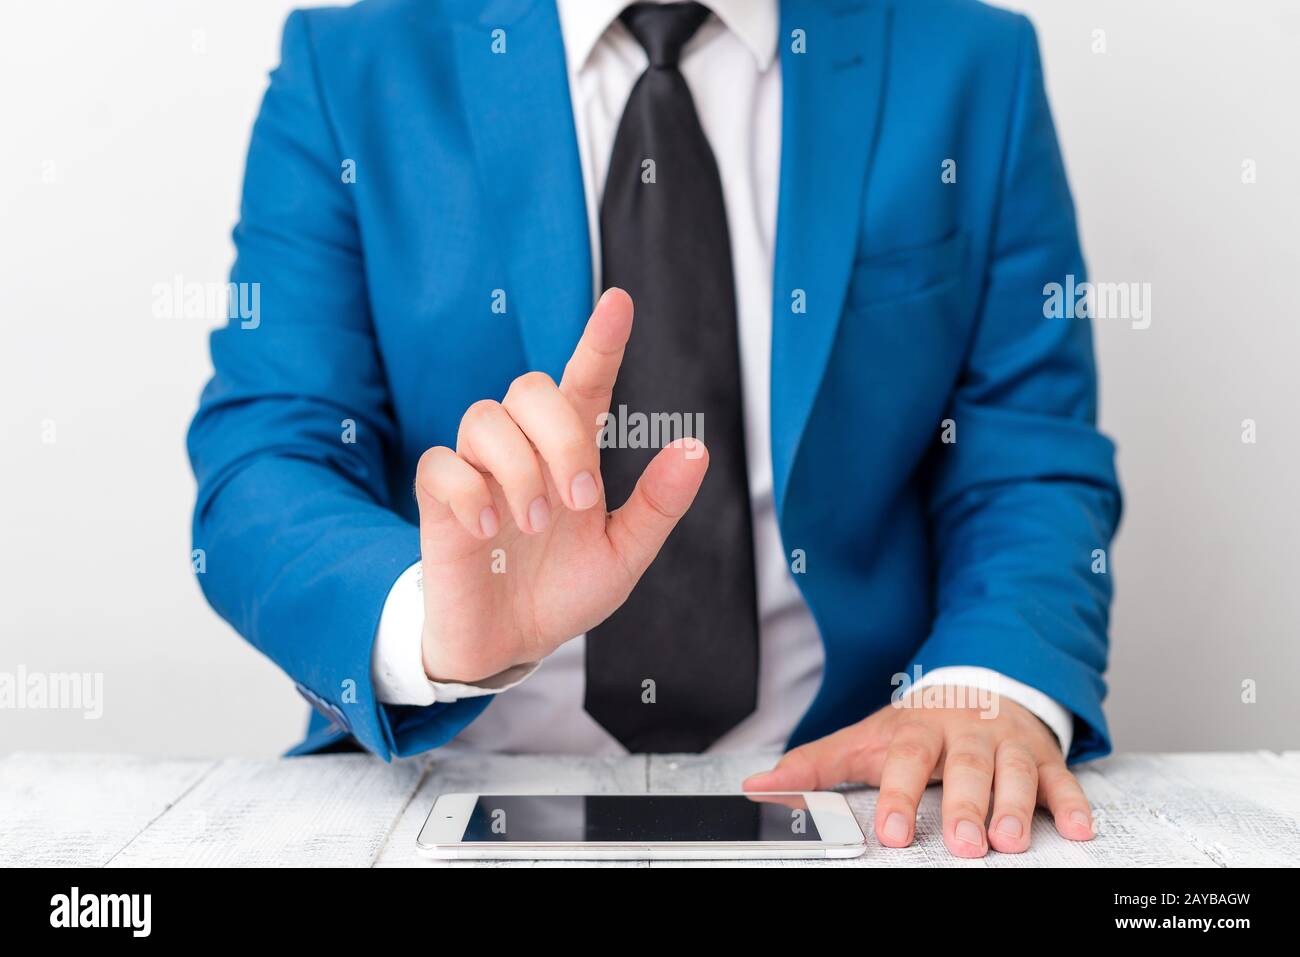 Uomo d'affari con dito puntato davanti a lui. L'uomo d'affari tiene in mano la parte superiore del giro e punta con il suo dito. Foto Stock